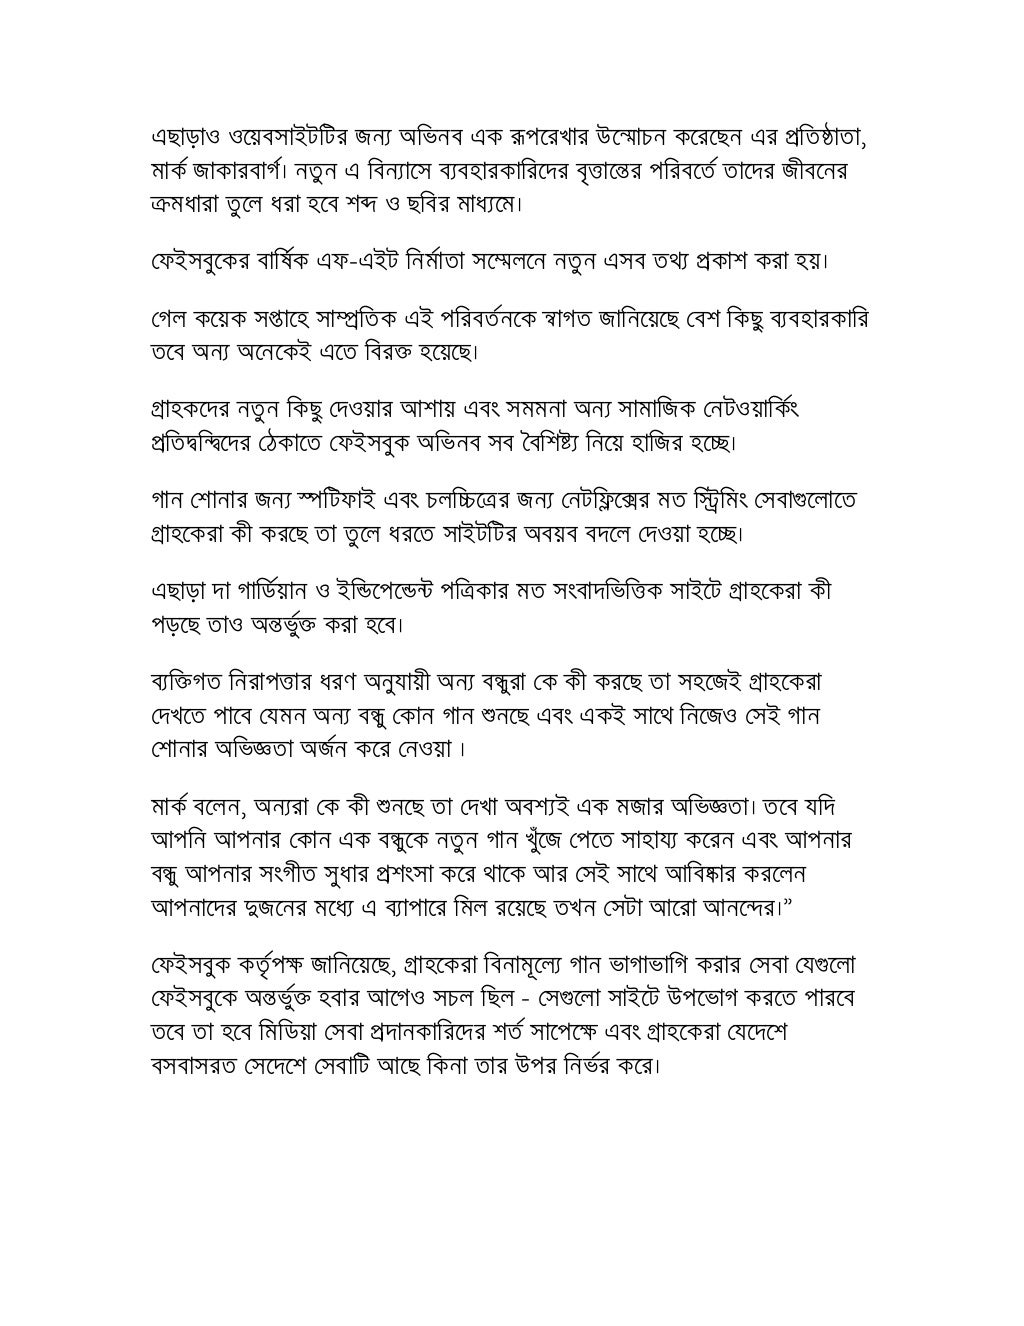 bengali essay on poverty